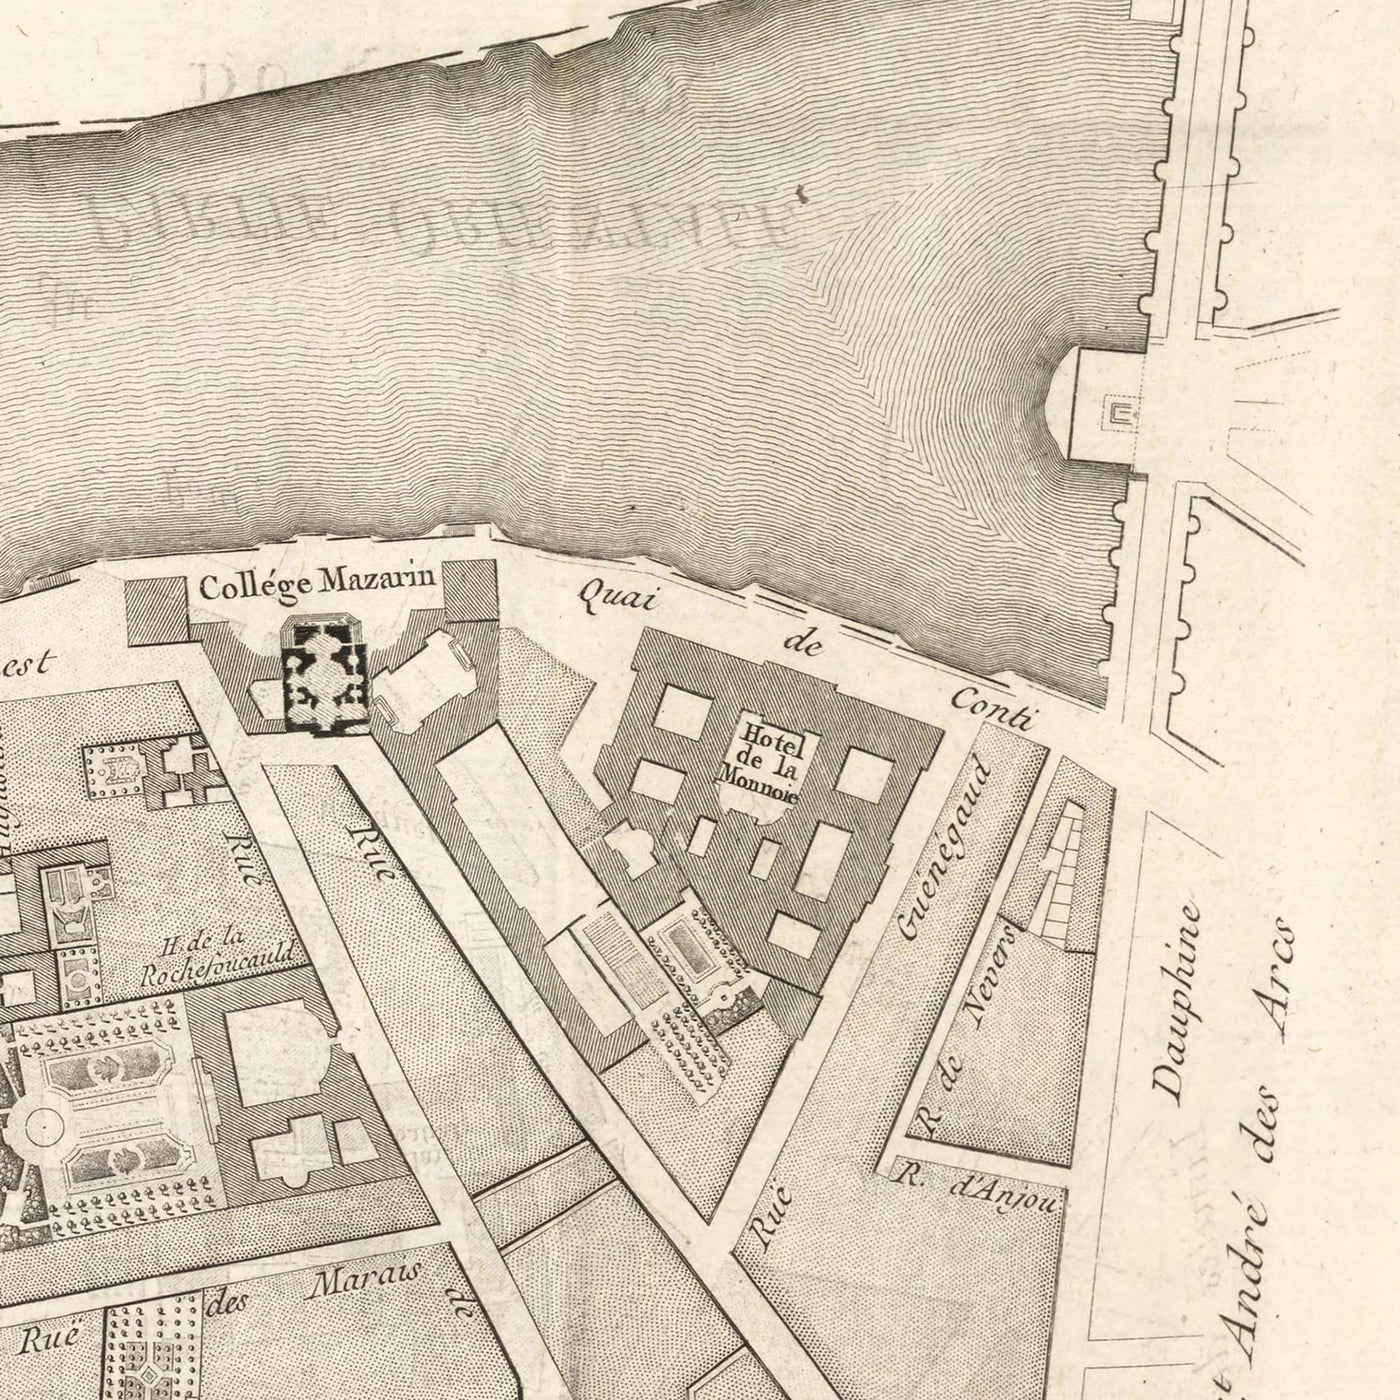 Mapa antiguo de St Germain (París) de Jean Baptise Michel Jaillot en 1775 - Sena, Point Royal, Palais Bourbon, Rue Du Bac, Caserne des Gardes